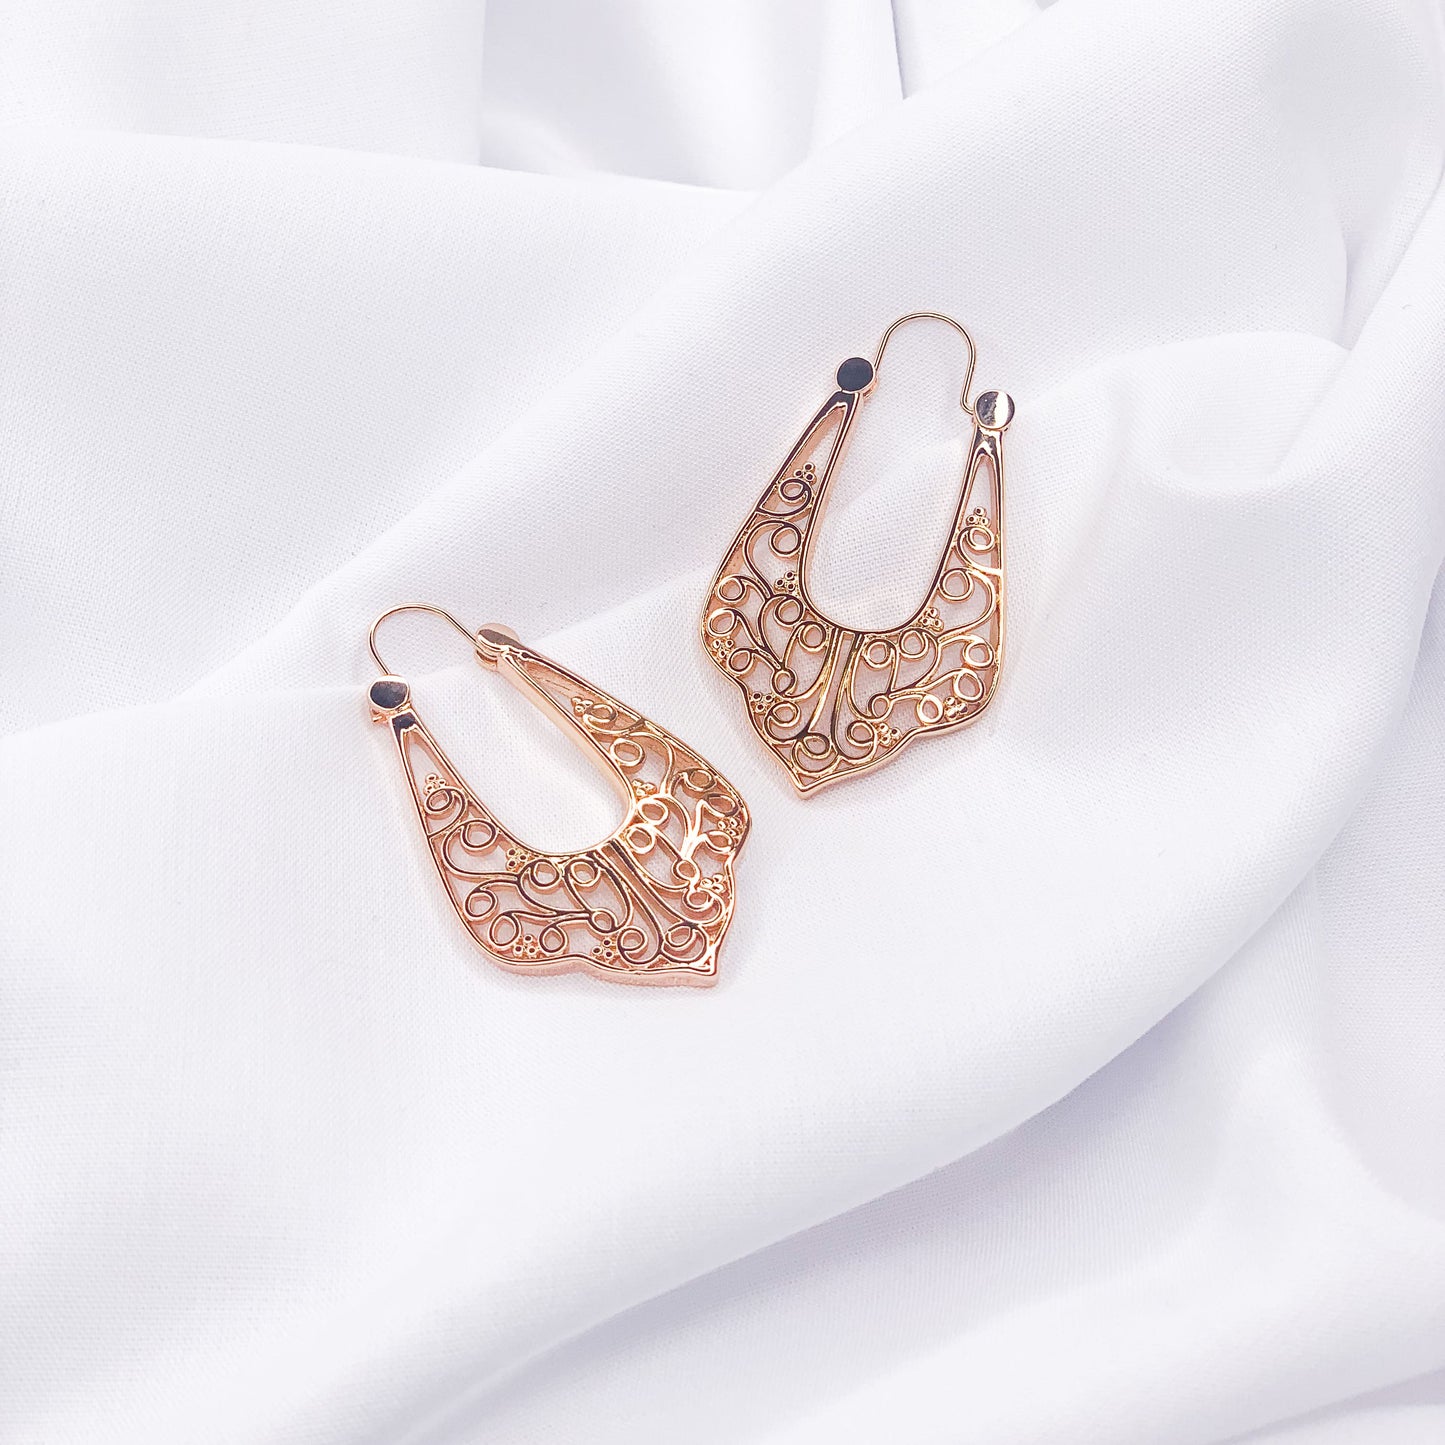 Gold dangle earrings